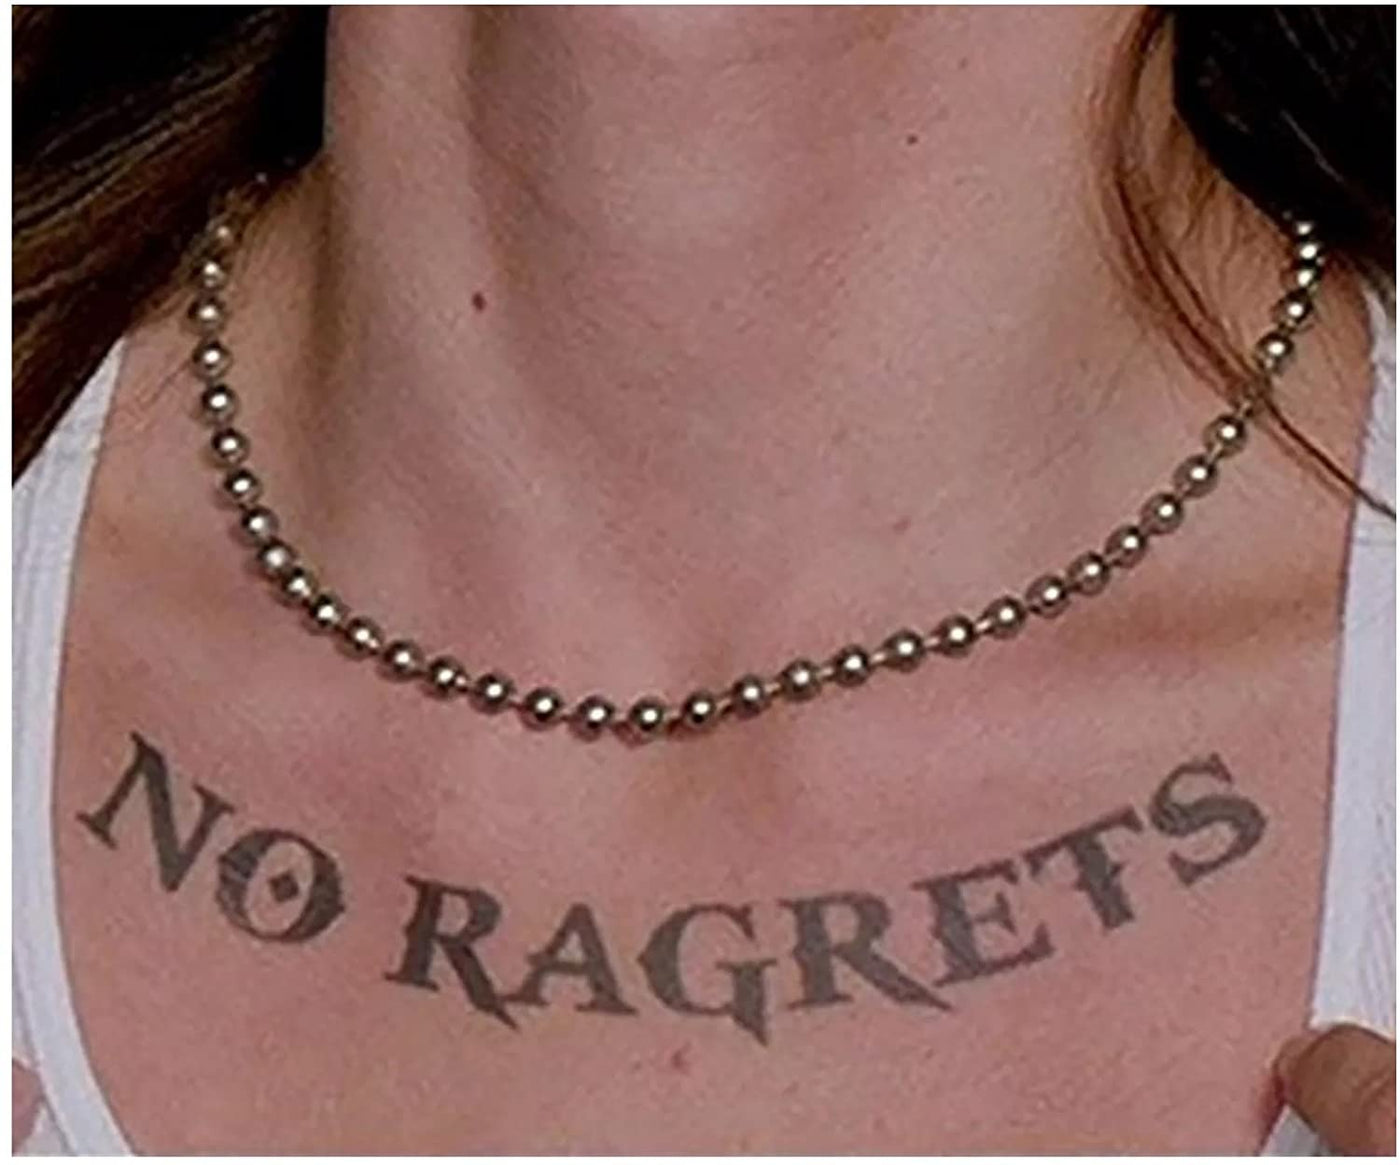 No Ragrets Necklace